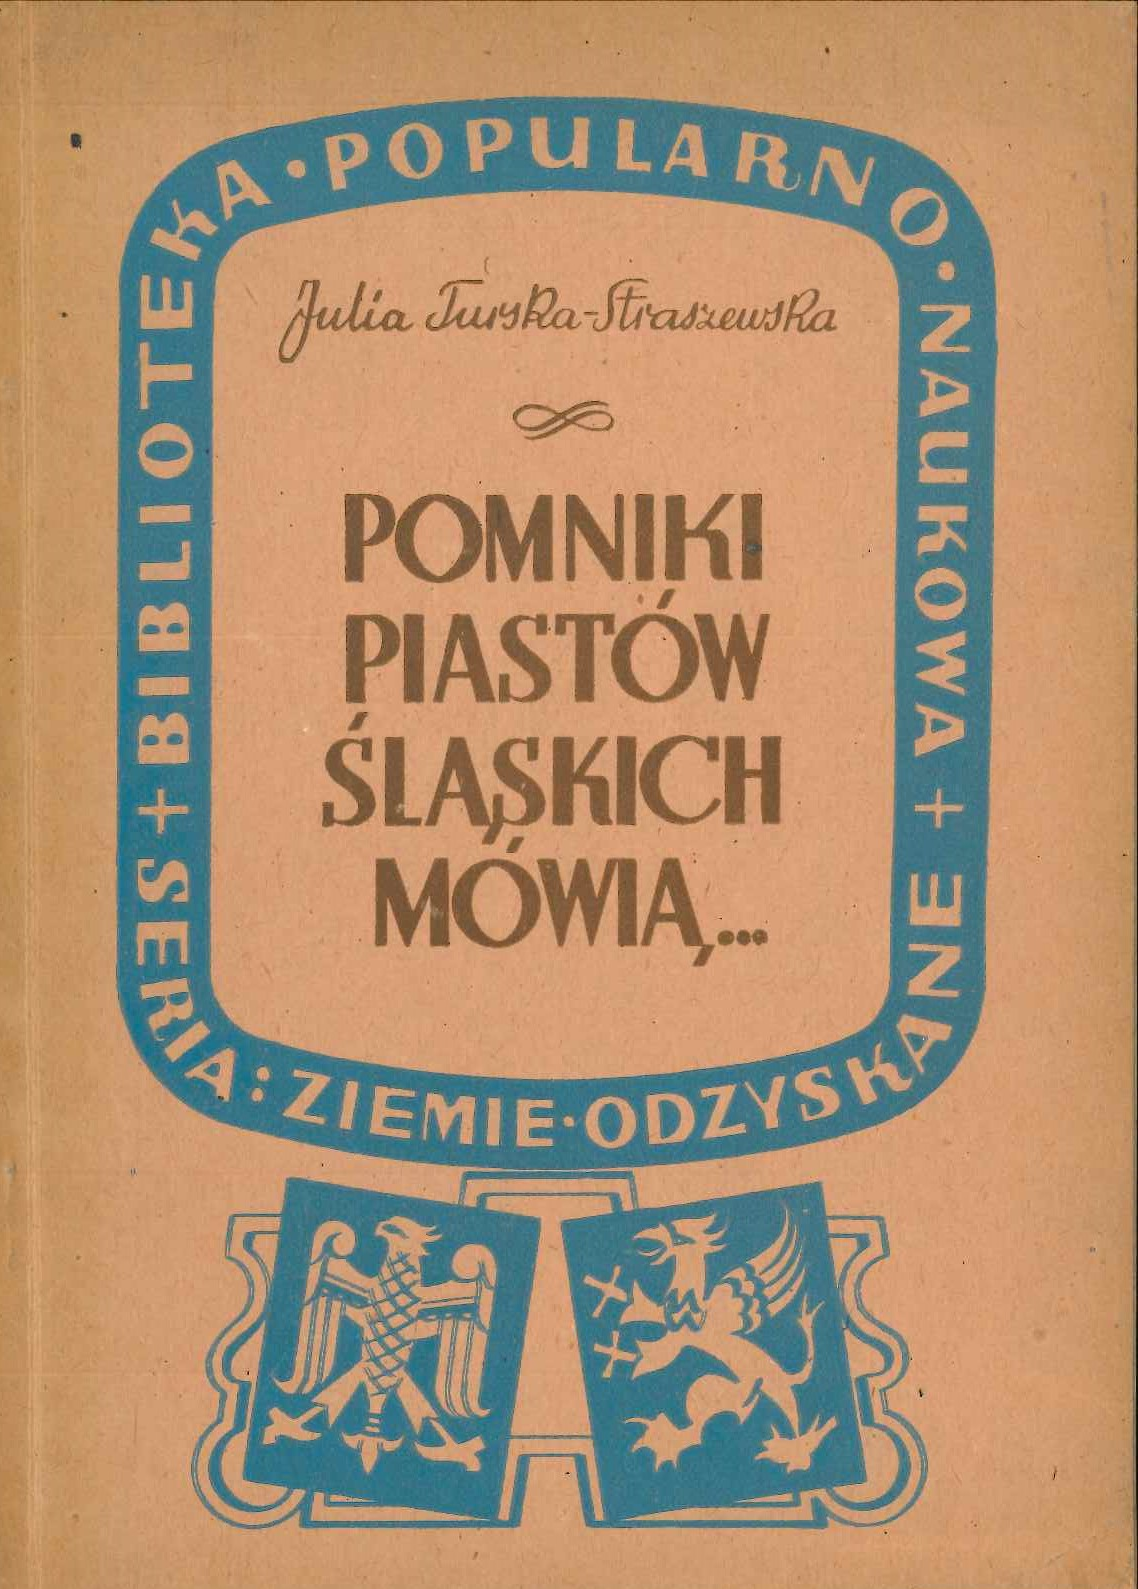 Pomniki Piastow Slaskich mowia